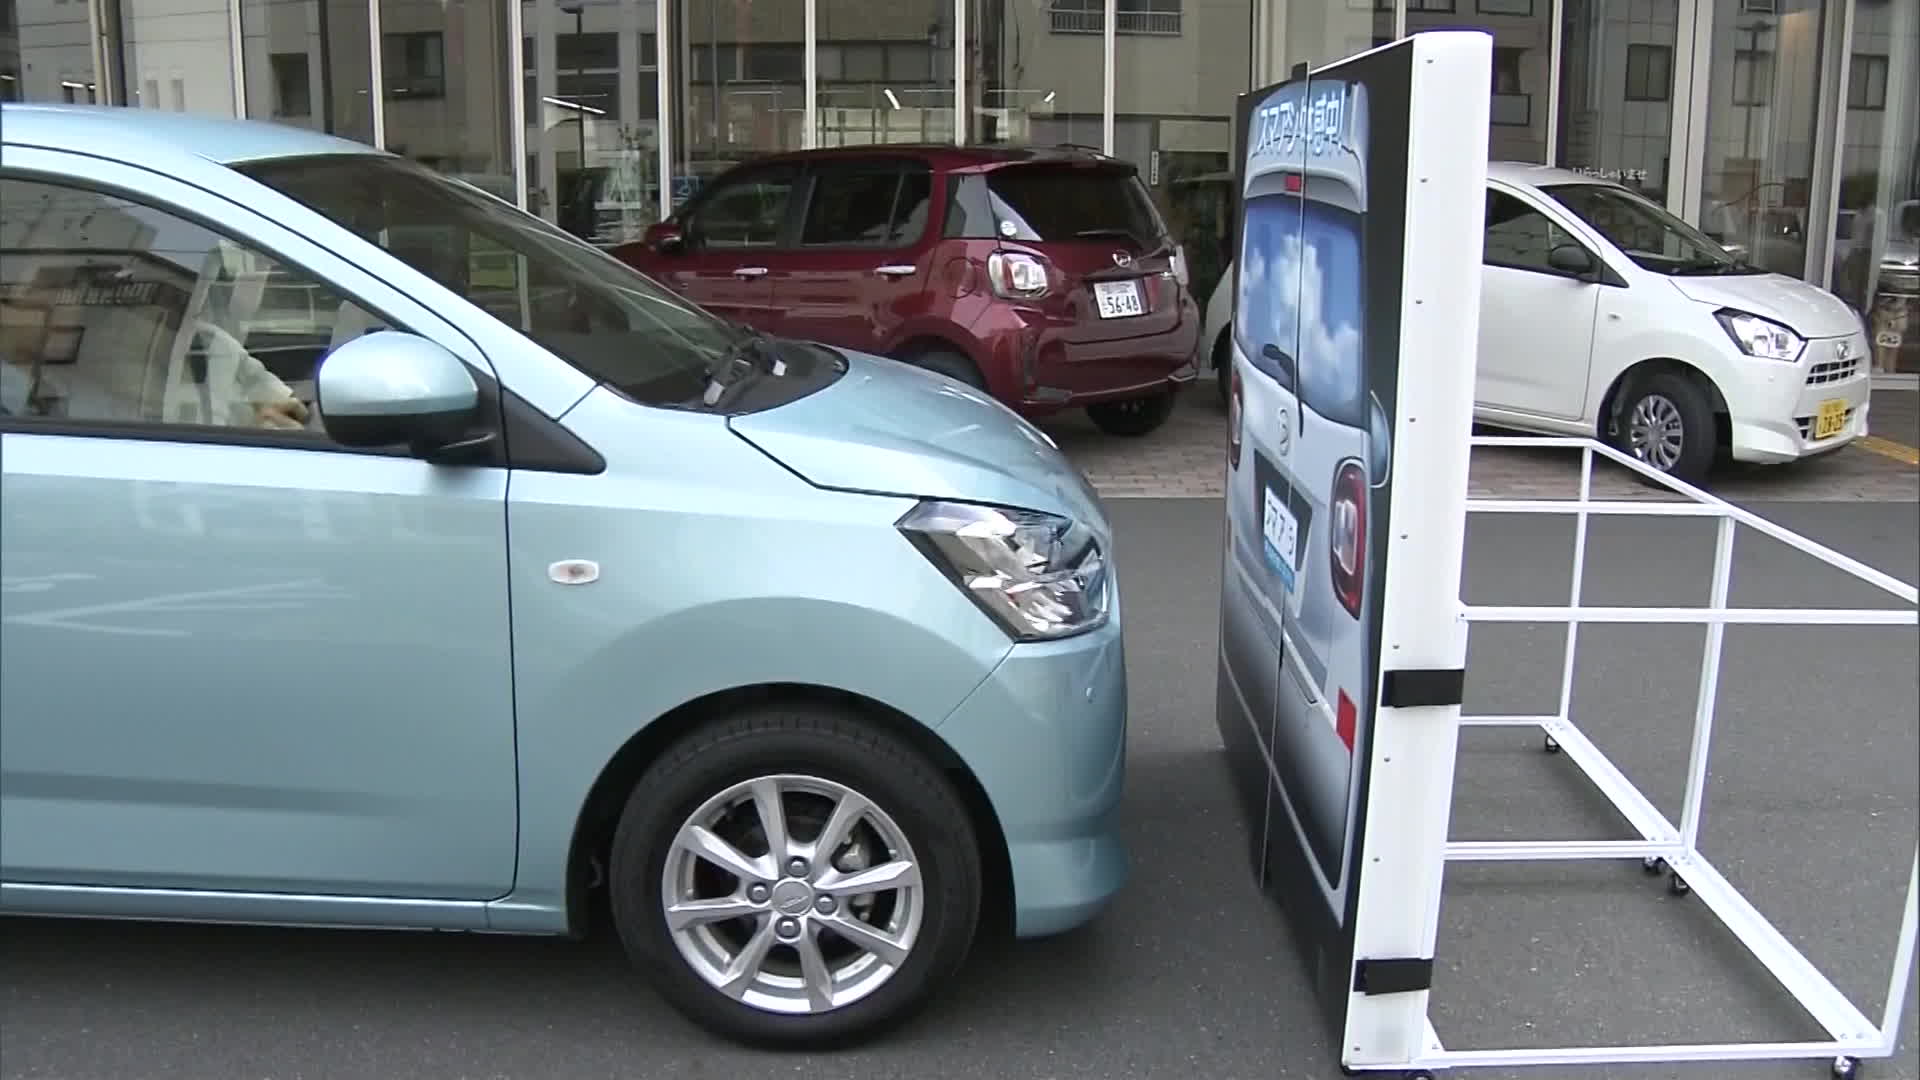 일본에서 장애물을 감지하면 자동으로 운행을 멈추는 비상 자동 제동장치를 장착한 차량을 시연한 모습.